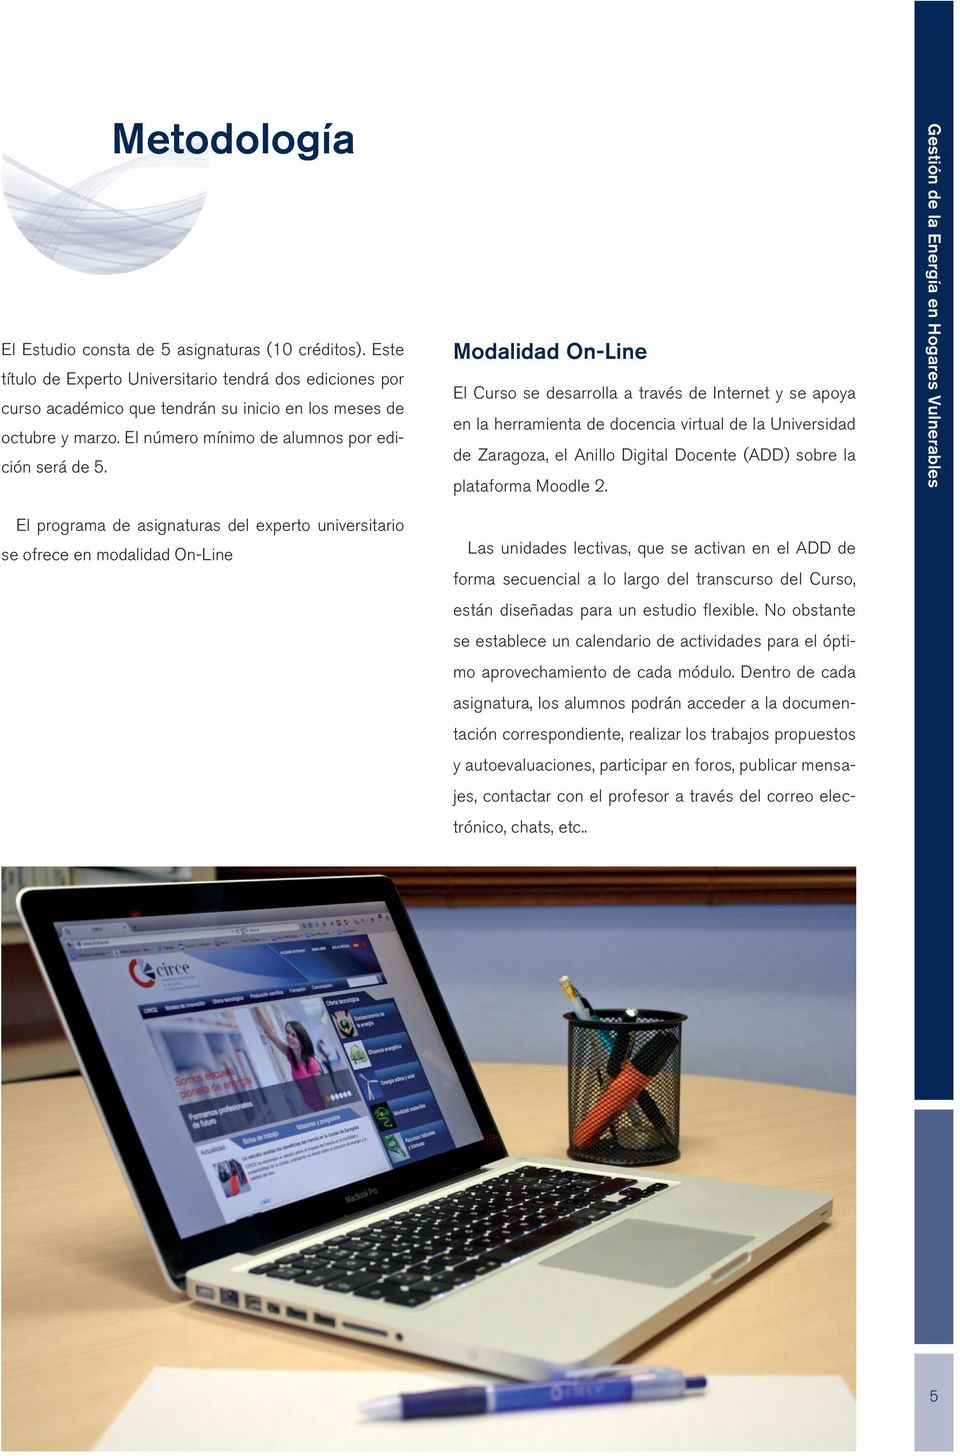 Modalidad On-Line El Curso se desarrolla a través de Internet y se apoya en la herramienta de docencia virtual de la Universidad de Zaragoza, el Anillo Digital Docente (ADD) sobre la plataforma